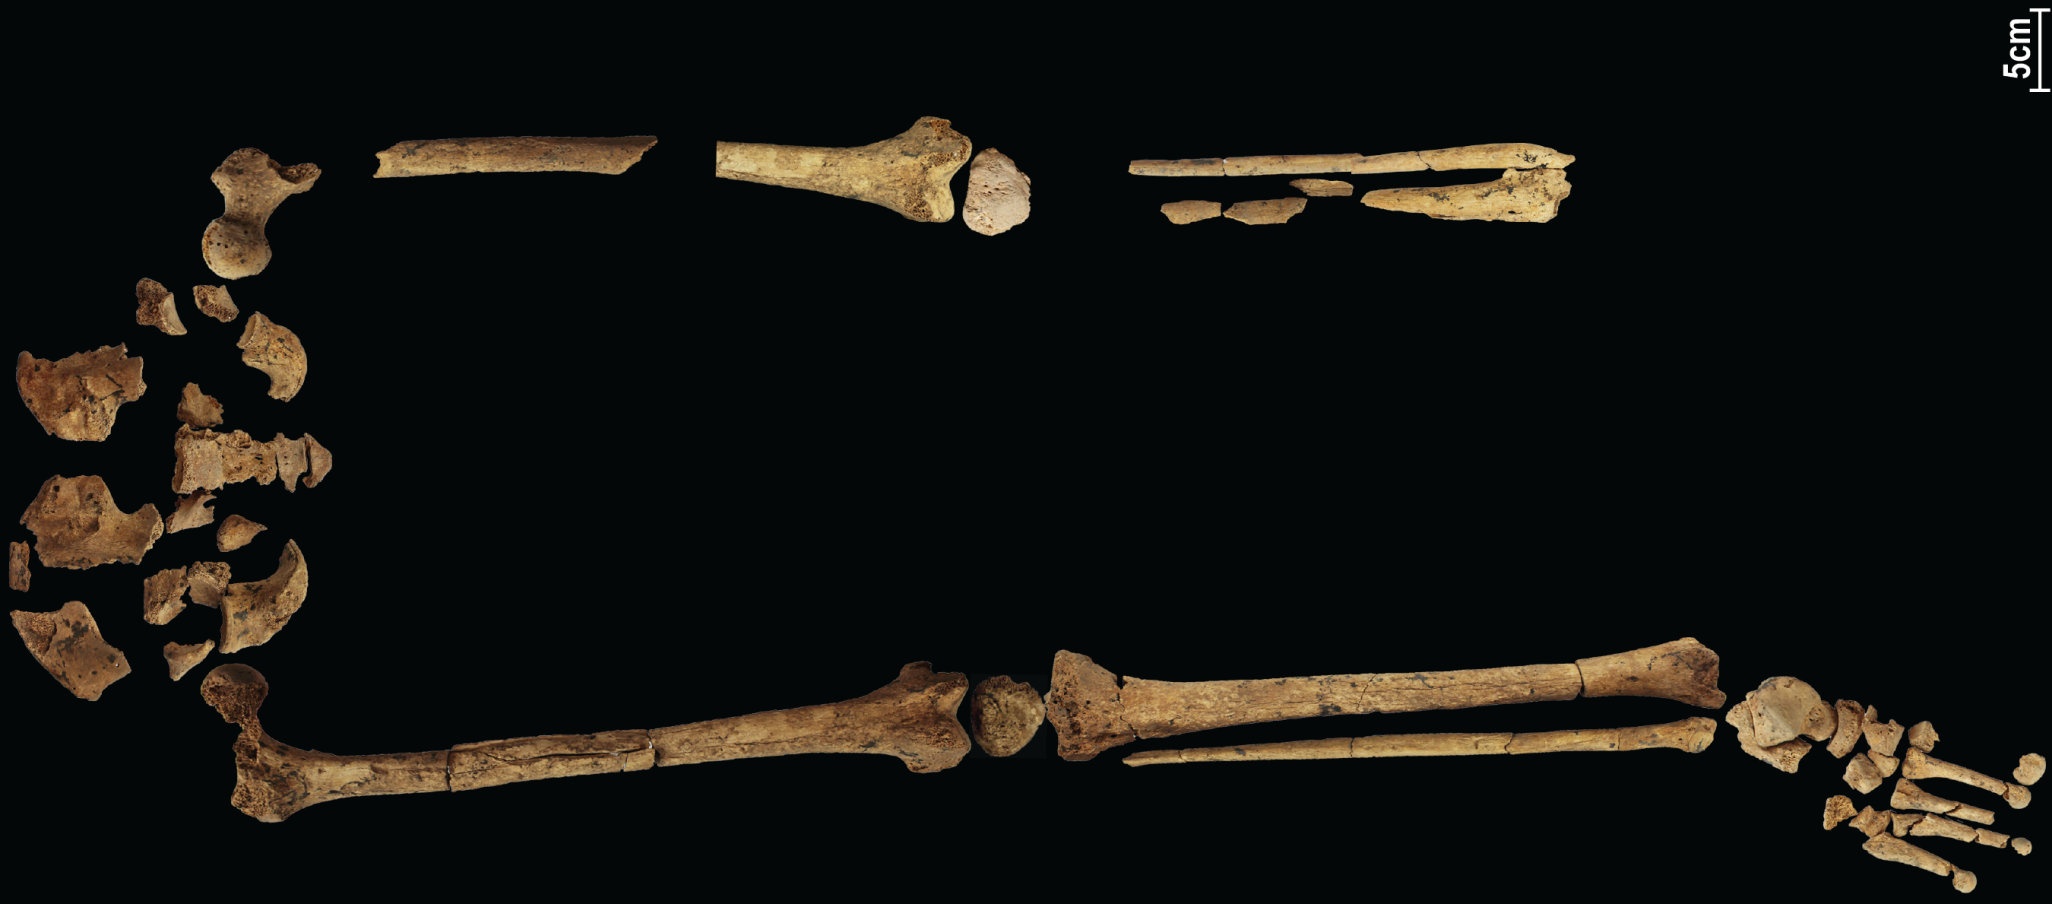 31,000 let staro okostje, ki prikazuje najzgodnejšo znano kompleksno operacijo, bi lahko ponovno napisalo zgodovino! 4